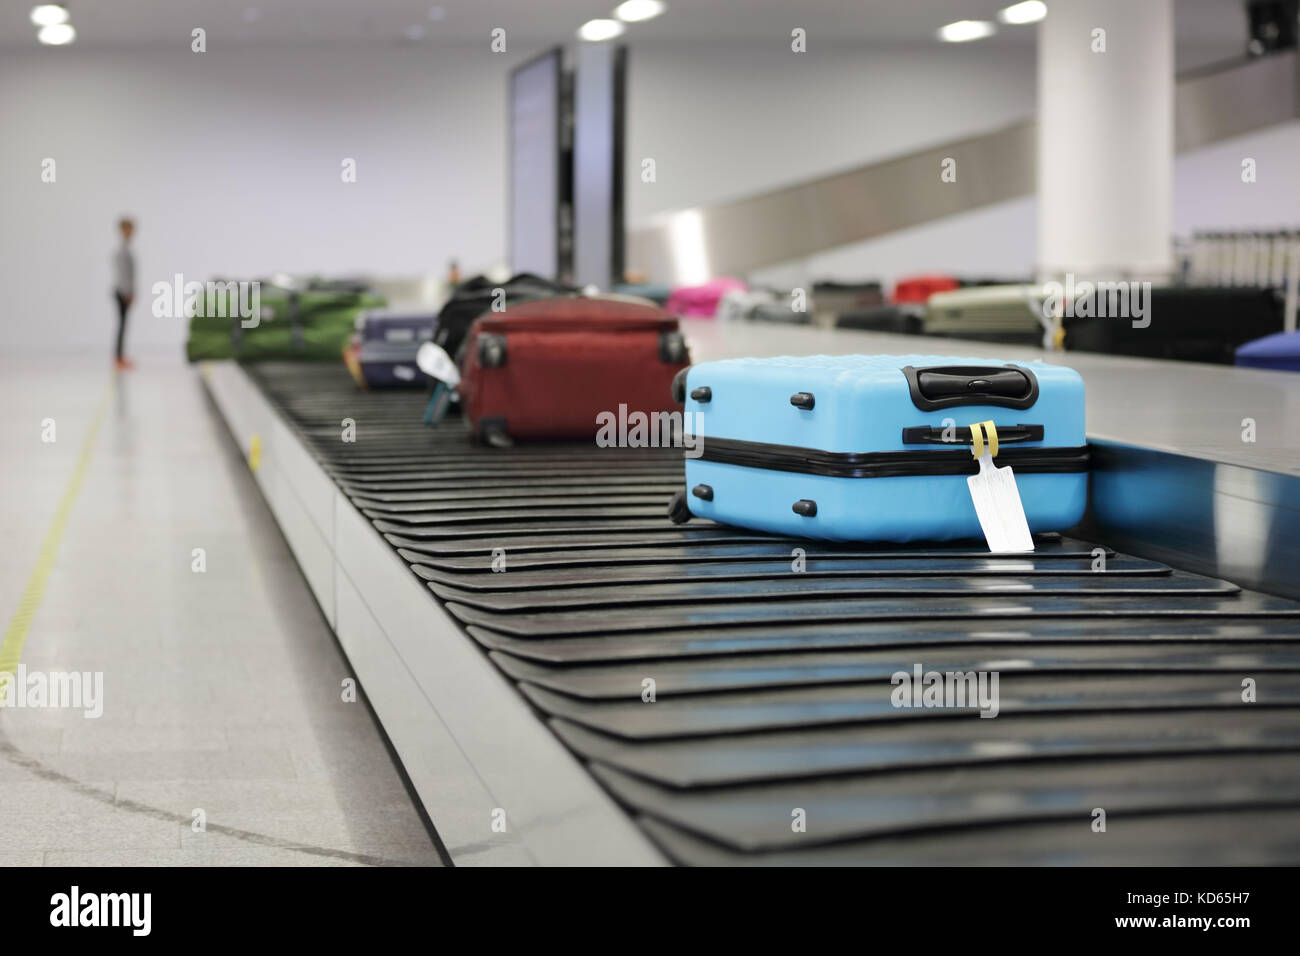 Valise ou assurance sur la courroie du convoyeur dans l'attente de l'aéroport Banque D'Images